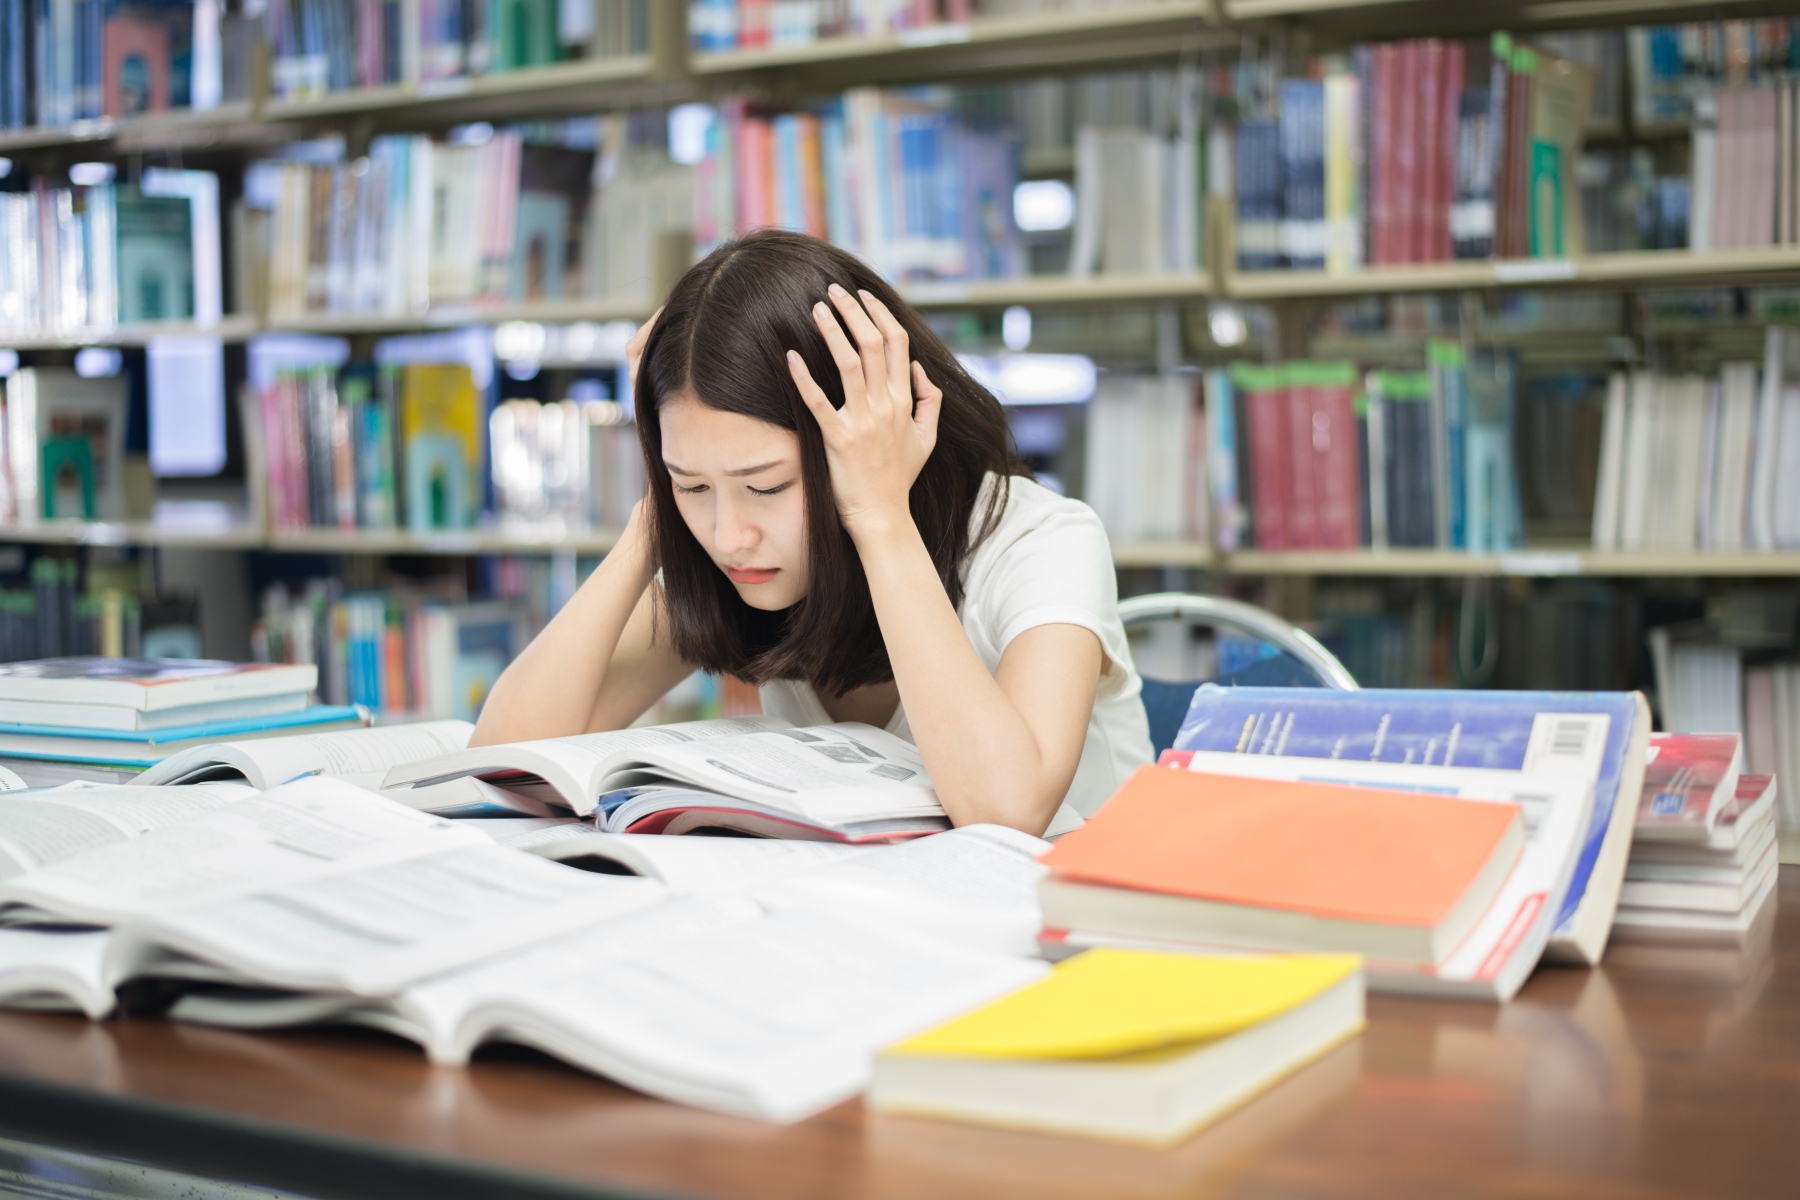 Άγχος επιτυχίας: Τι είναι το άγχος επιτυχίας για τους μαθητές και ποιες οι στρατηγικές αντιμετώπισής του;